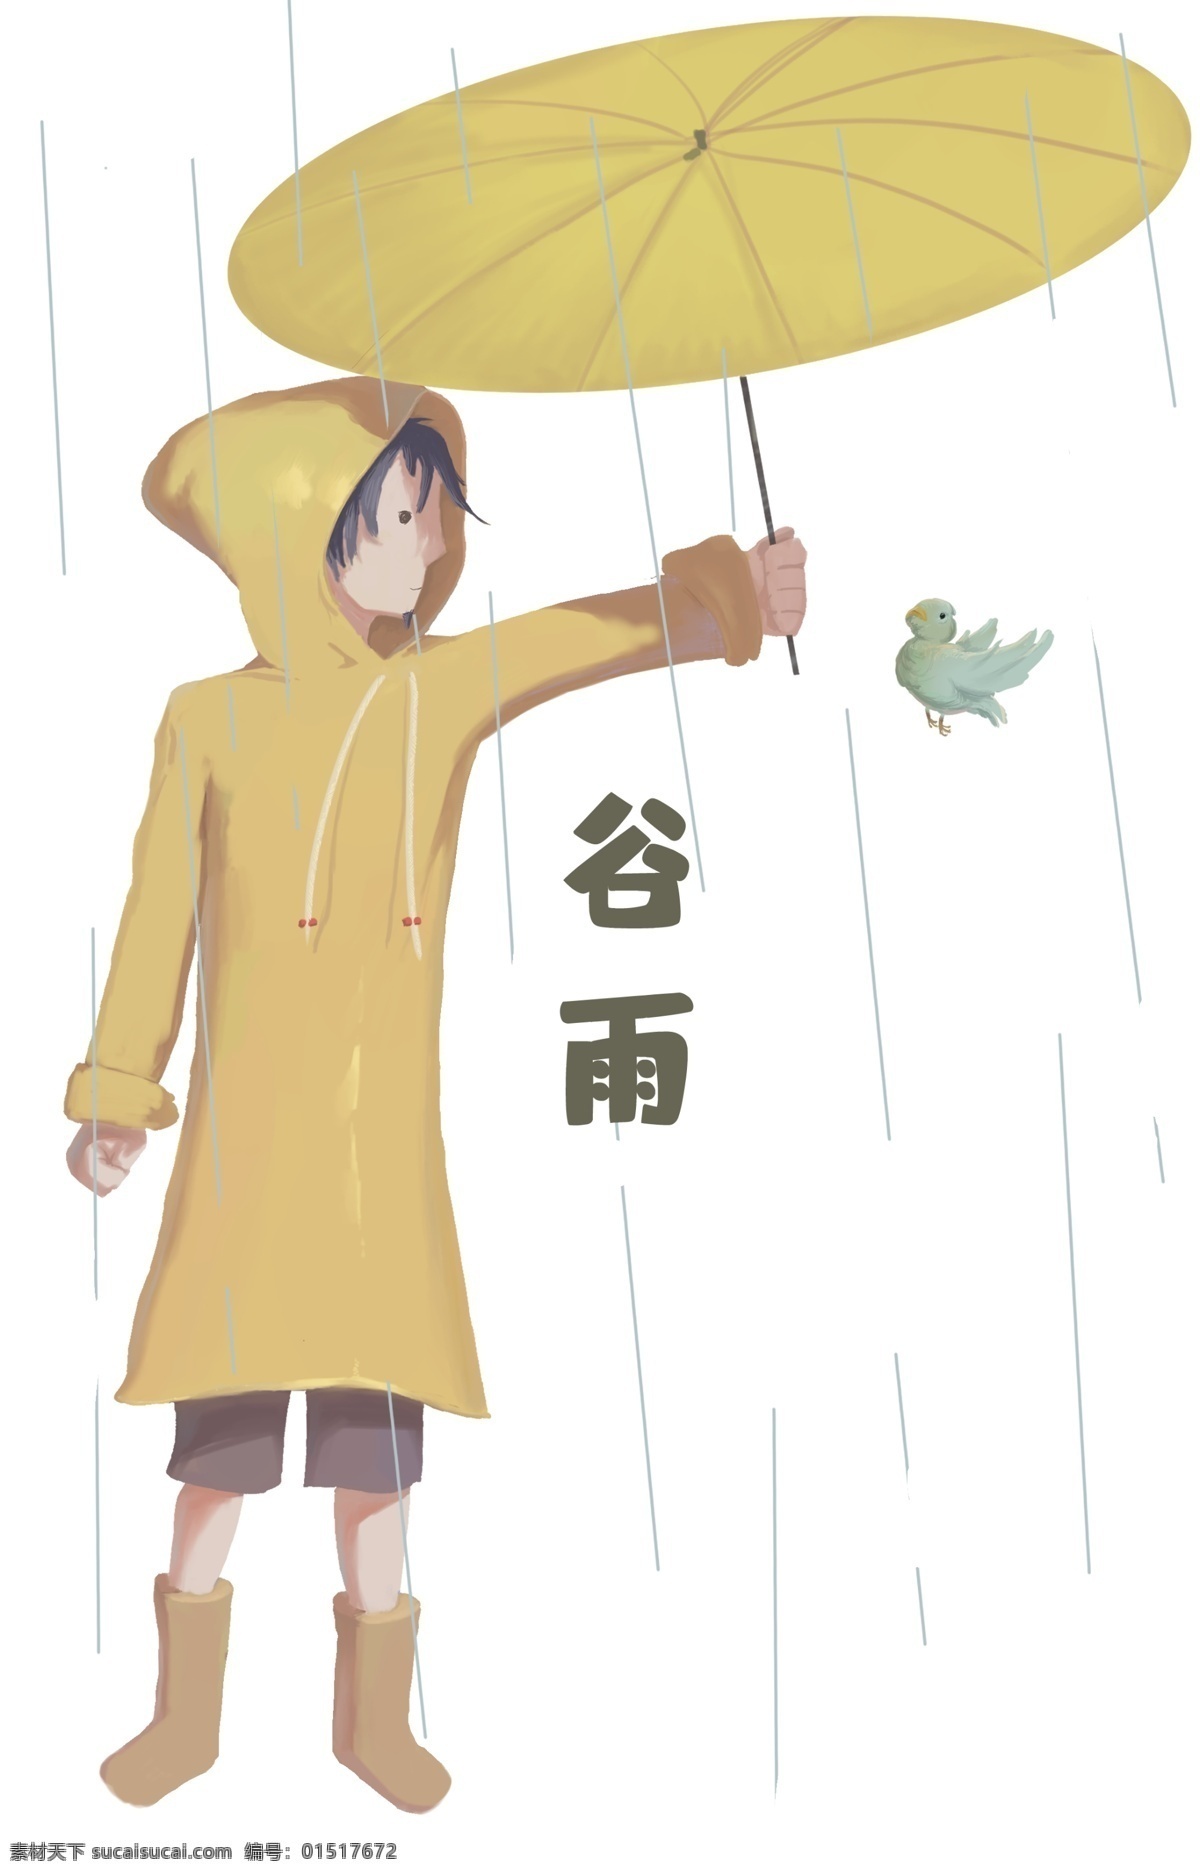 谷雨 女孩 小鸟 撑伞 谷雨人物插画 下雨天气 淋雨的小女孩 植物装饰 黄衣服女孩